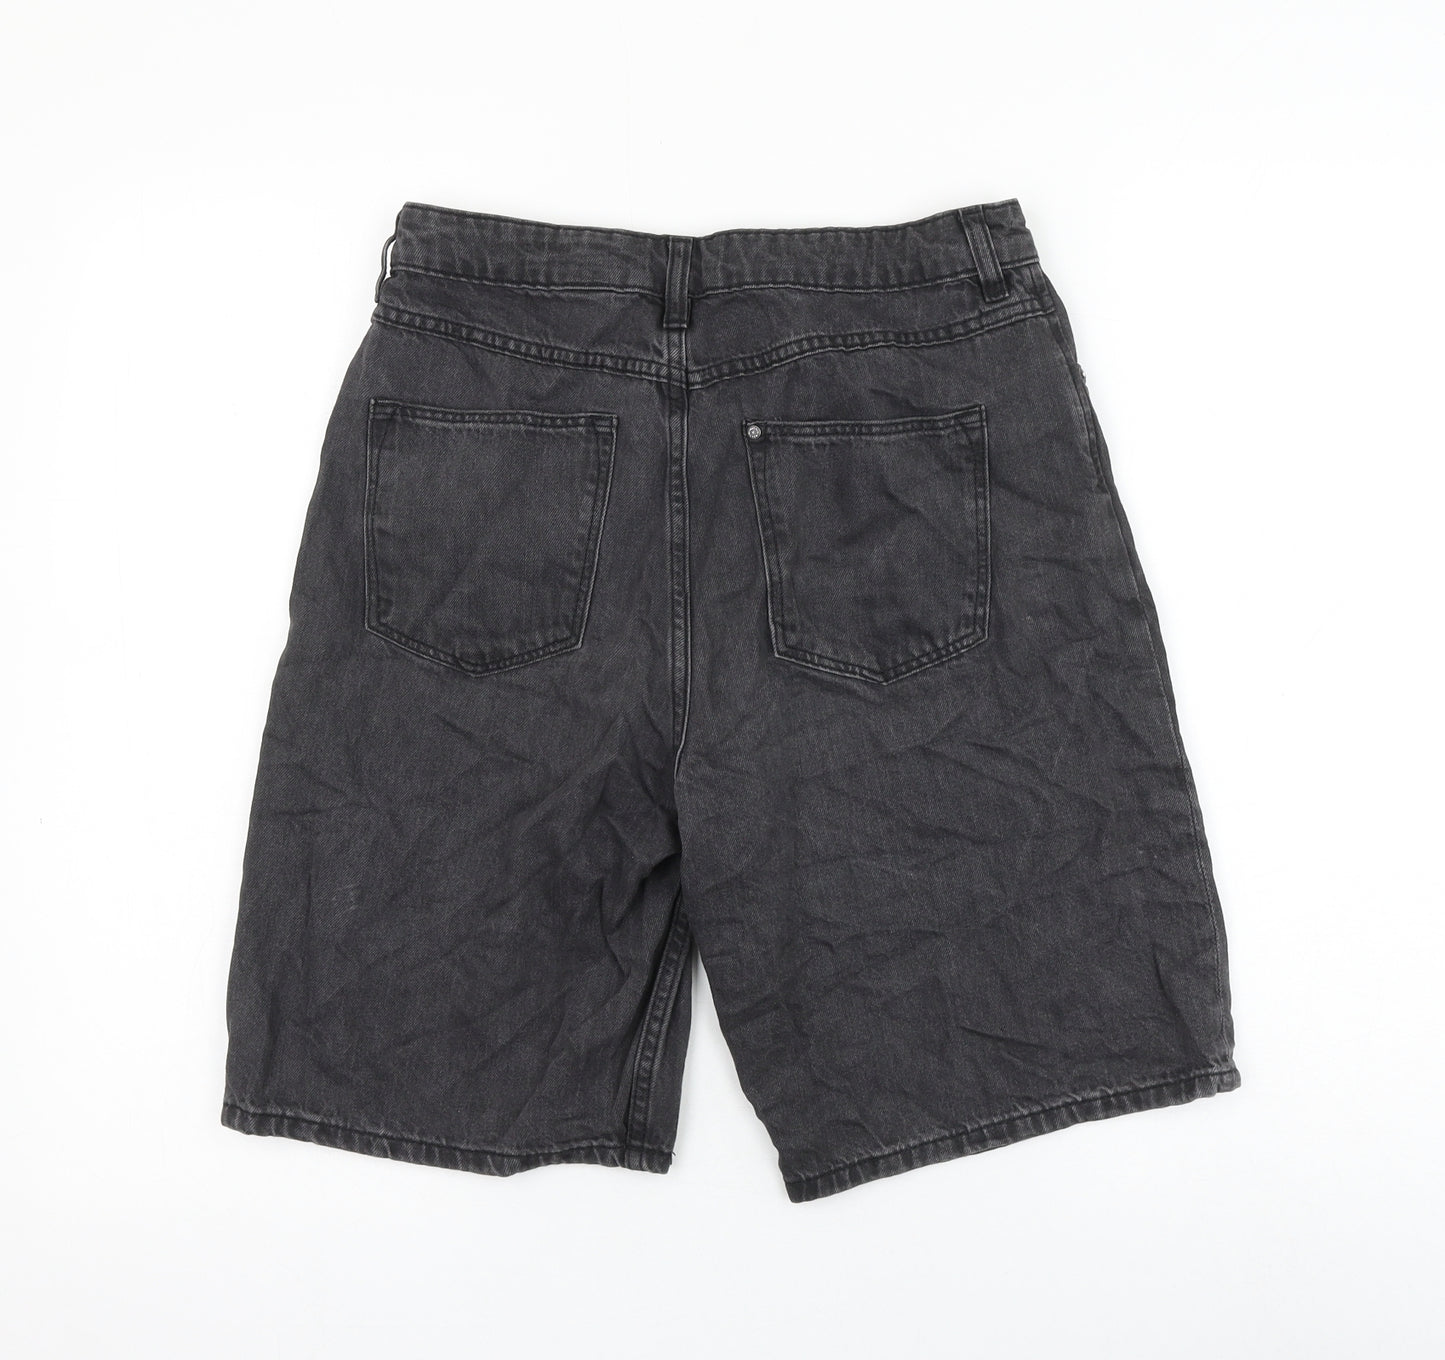 H&M Girls Black Cotton Bermuda Shorts Size 12-13 Years Regular Zip